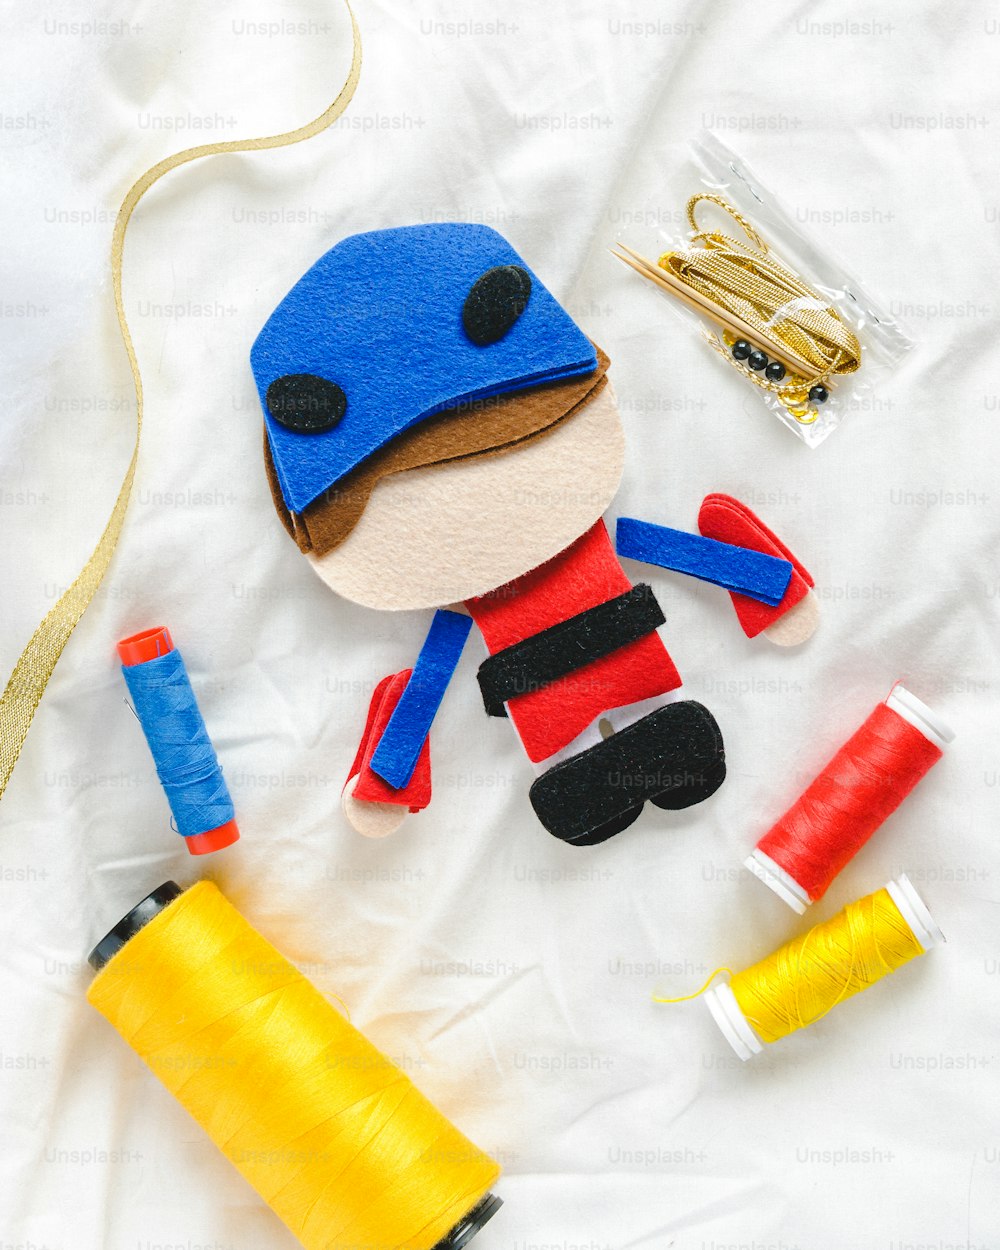 un jouet avec un chapeau bleu et une bobine de fil jaune